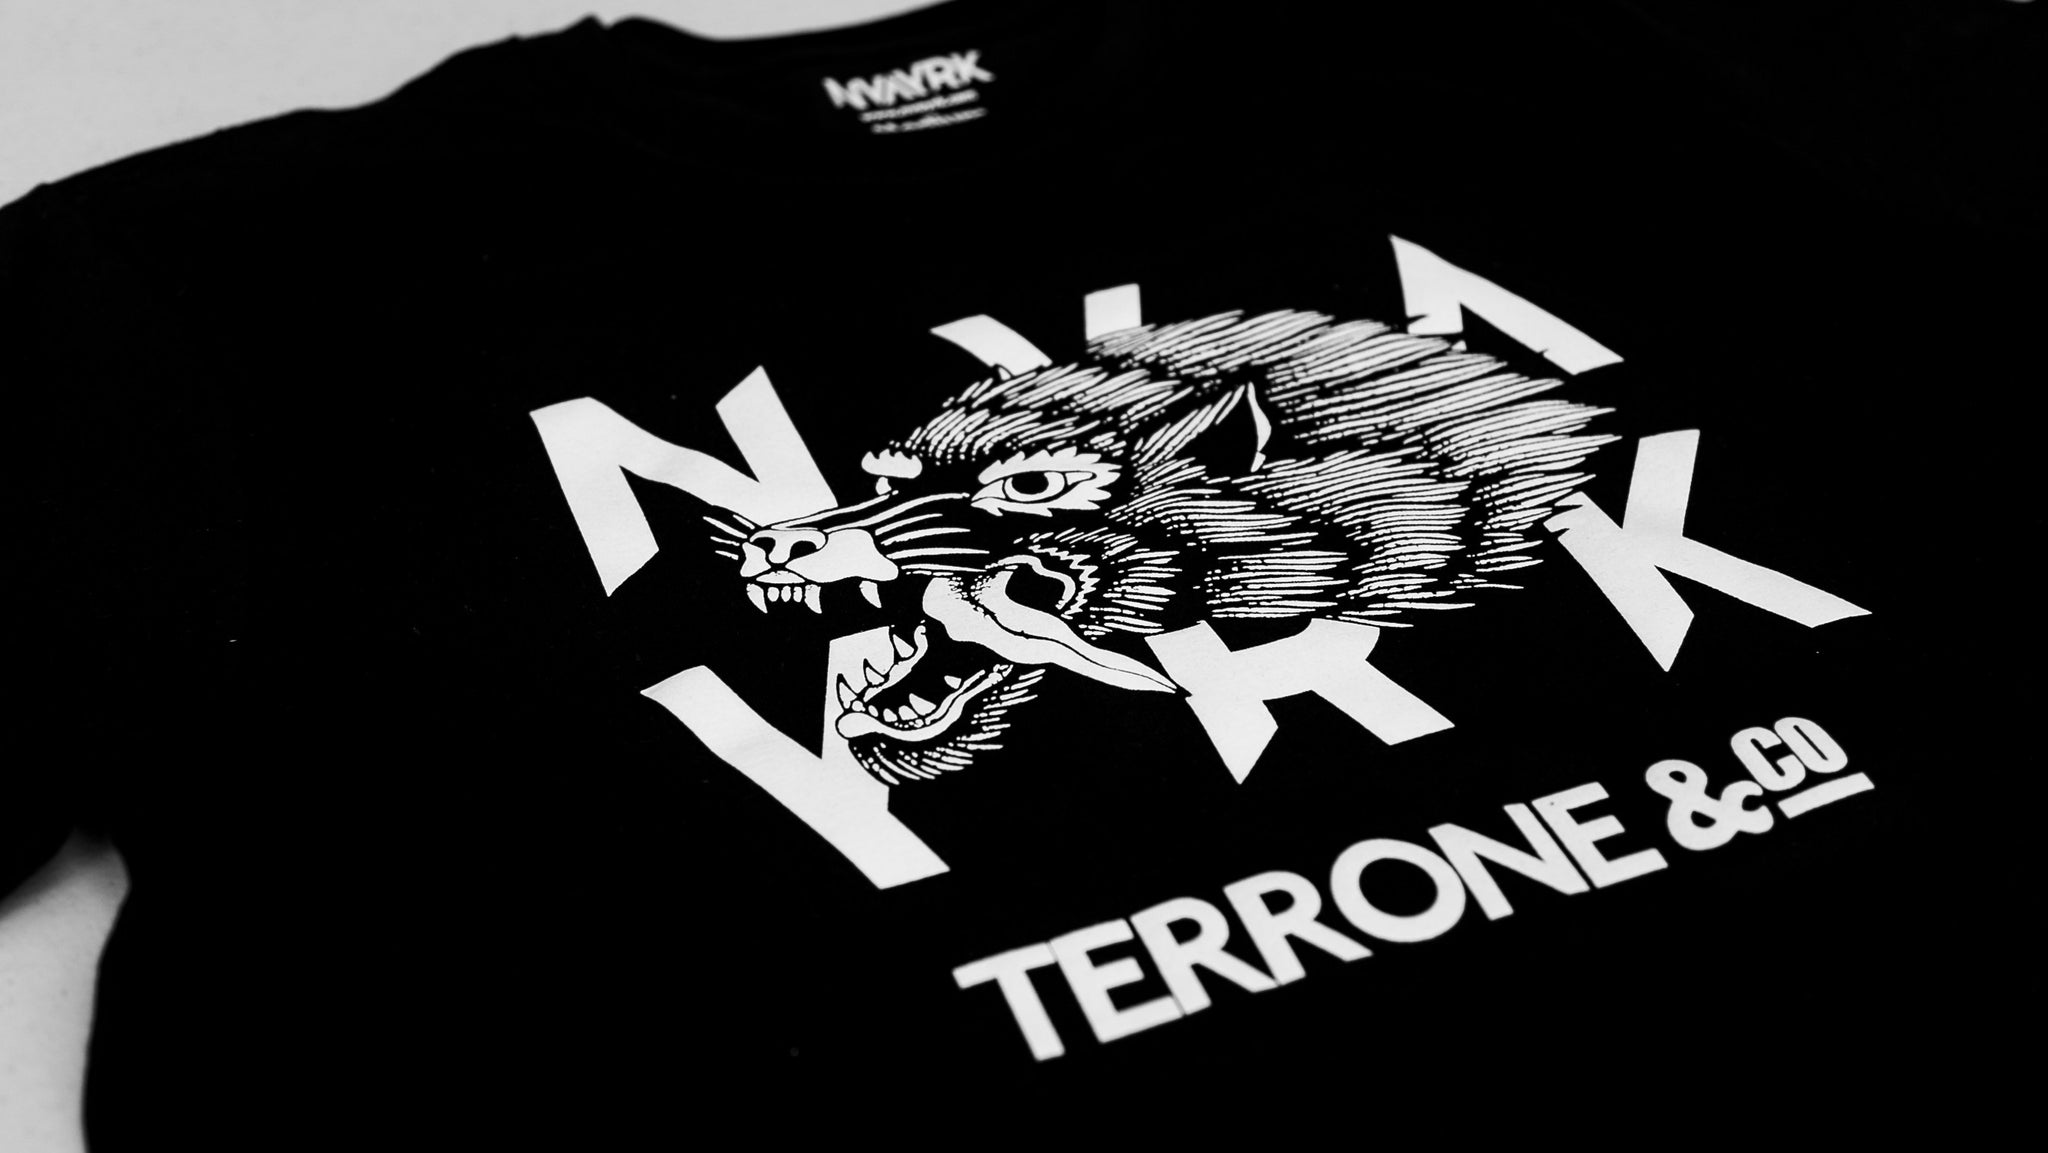 NVAYRK TERRONE Team Edition T-Shirt